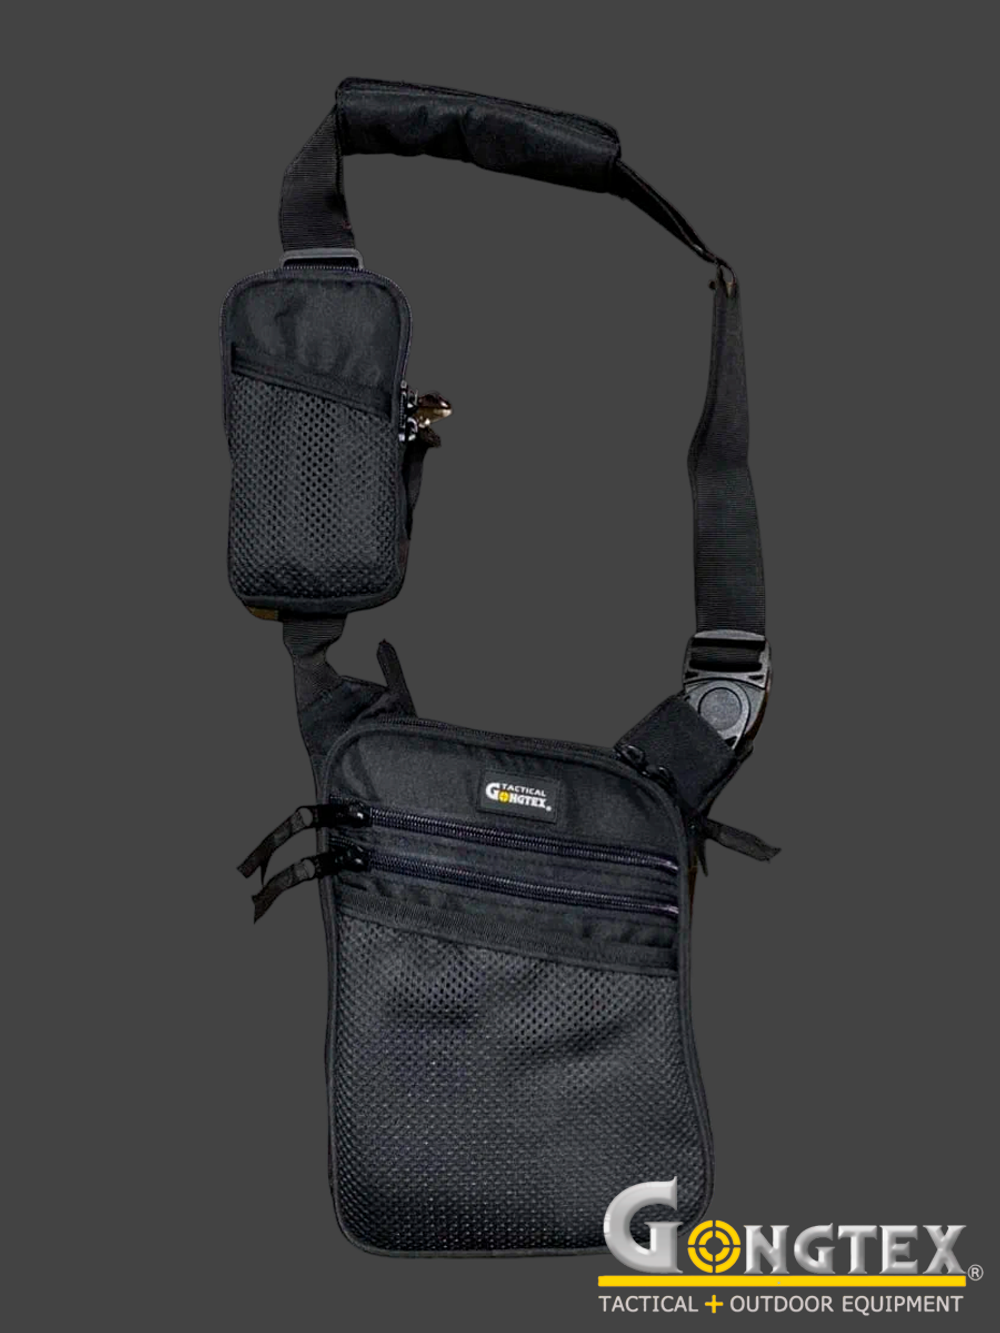 Сумка через плечо Gongtex Single Shoulder Bag. Чёрный